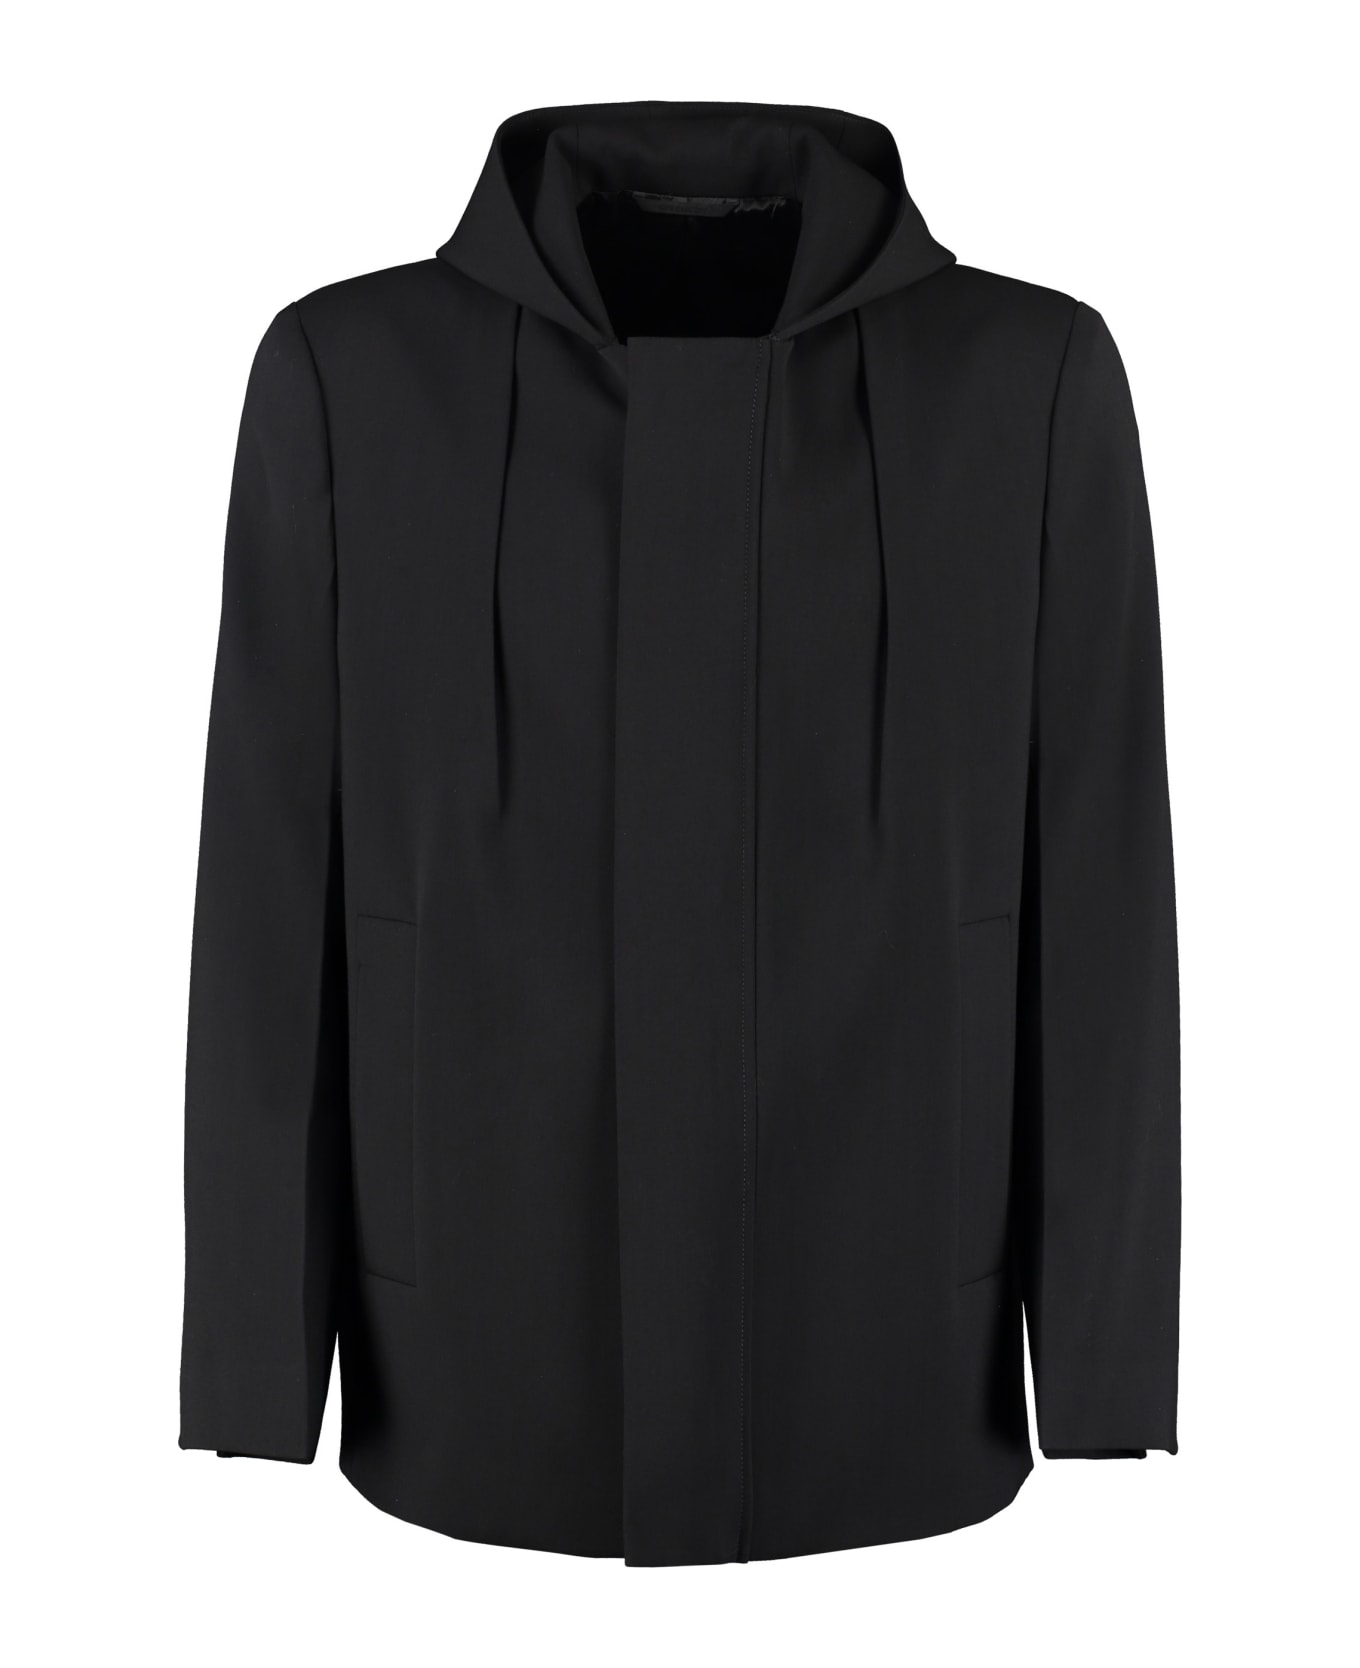 Givenchy Virgin Wool Jacket - black